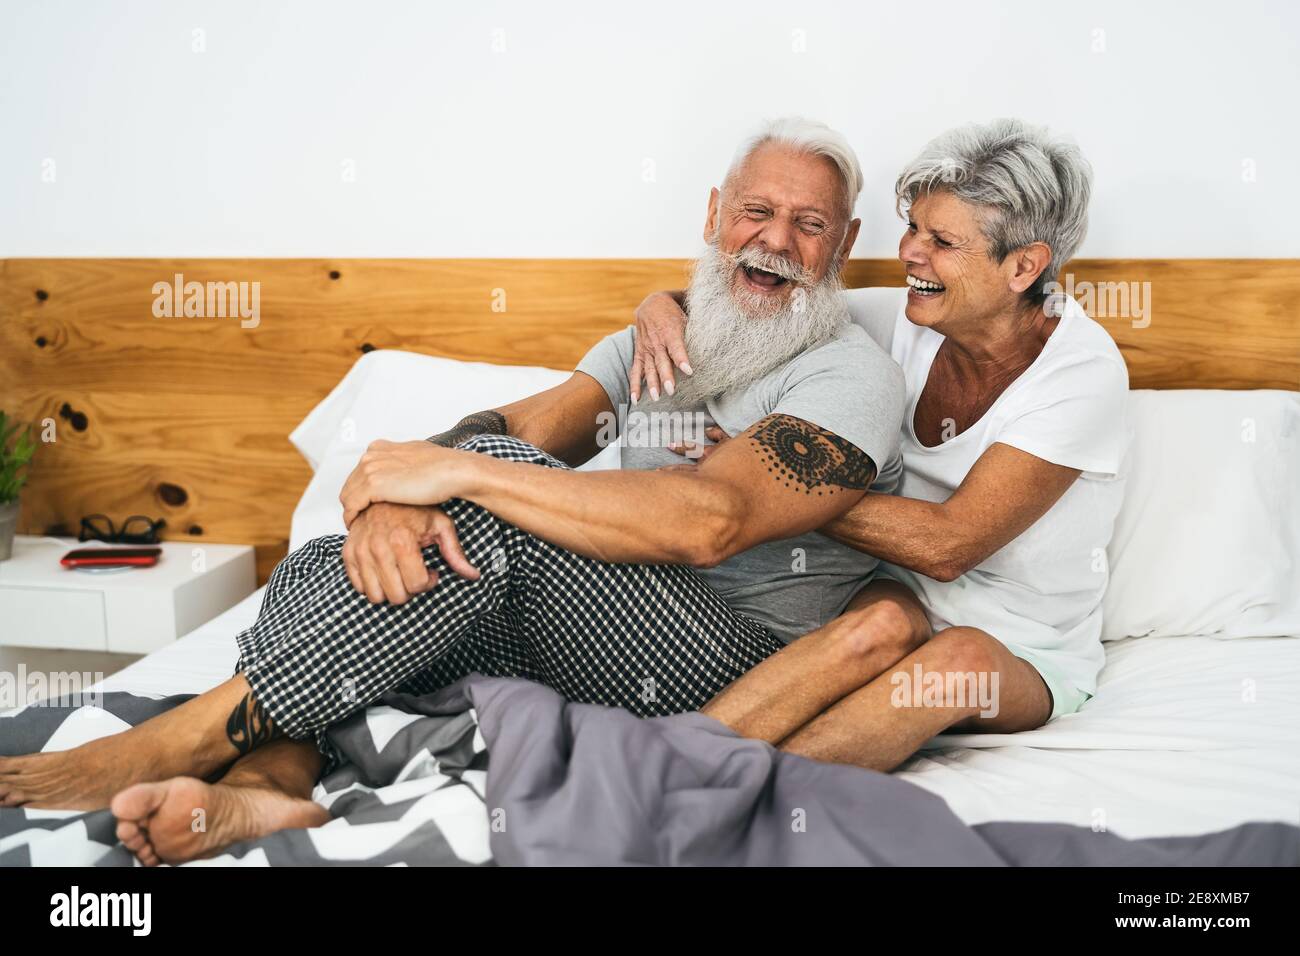 Glückliches Seniorenpaar lächelt zusammen im Bett - Hipster reif Leute, die eine lustige Schlafzeit haben - älterer Lebensstil und Liebe Beziehungskonzept Stockfoto